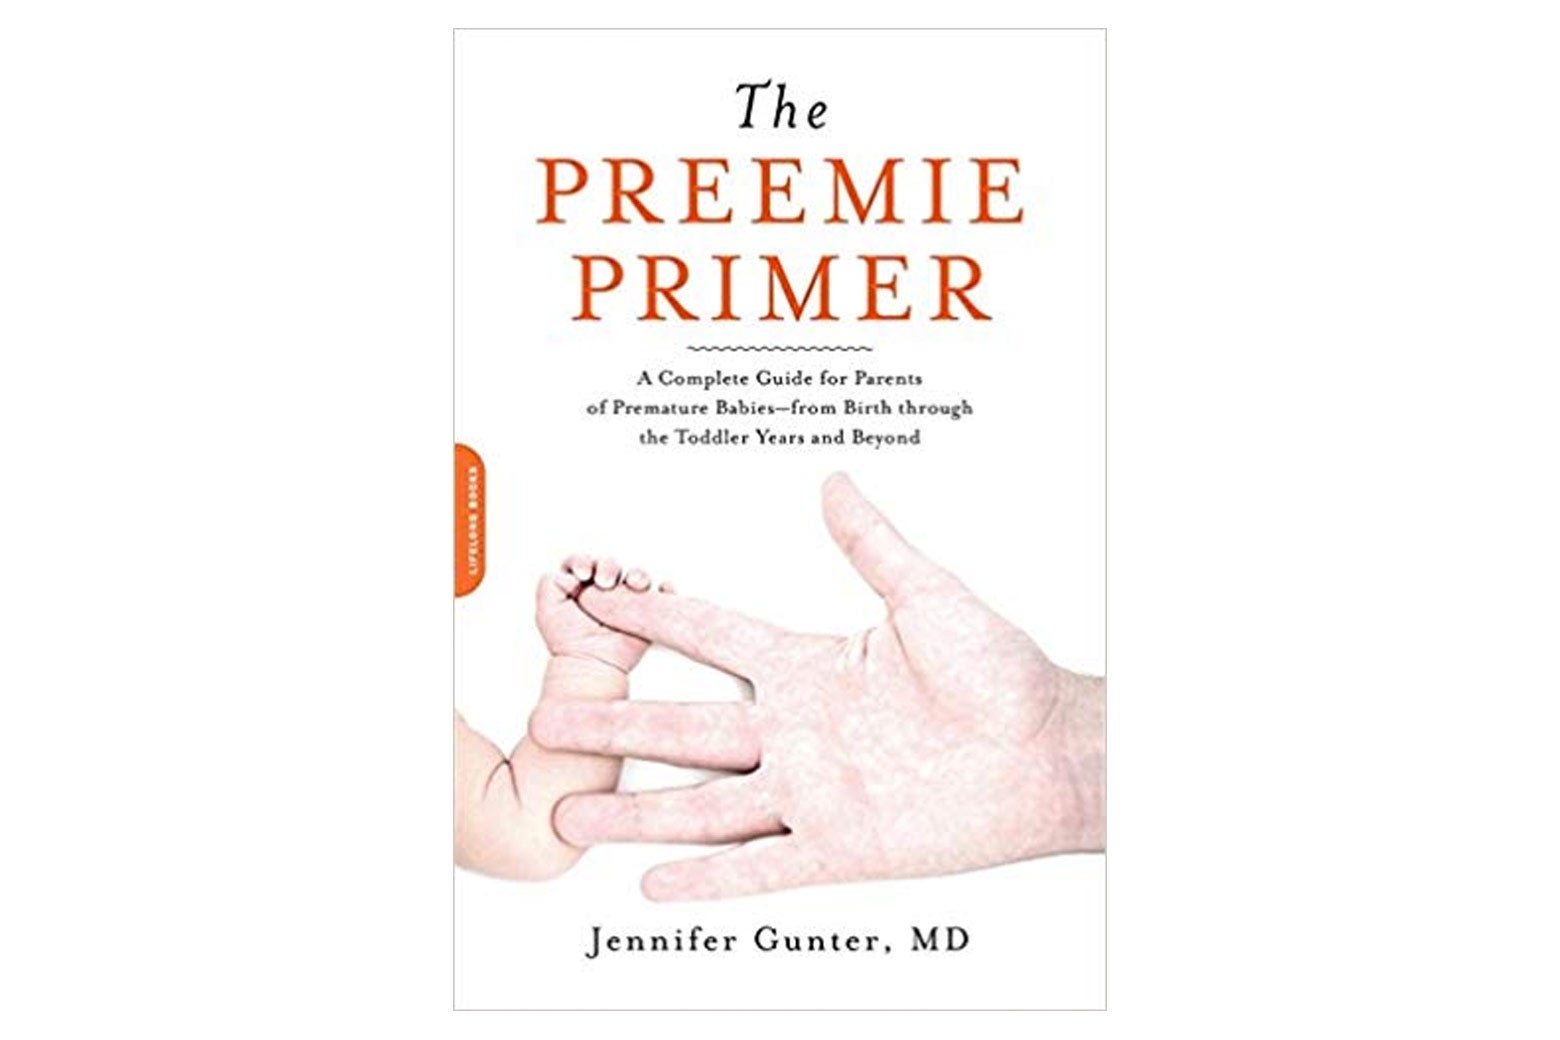 The Preemie Primer book.